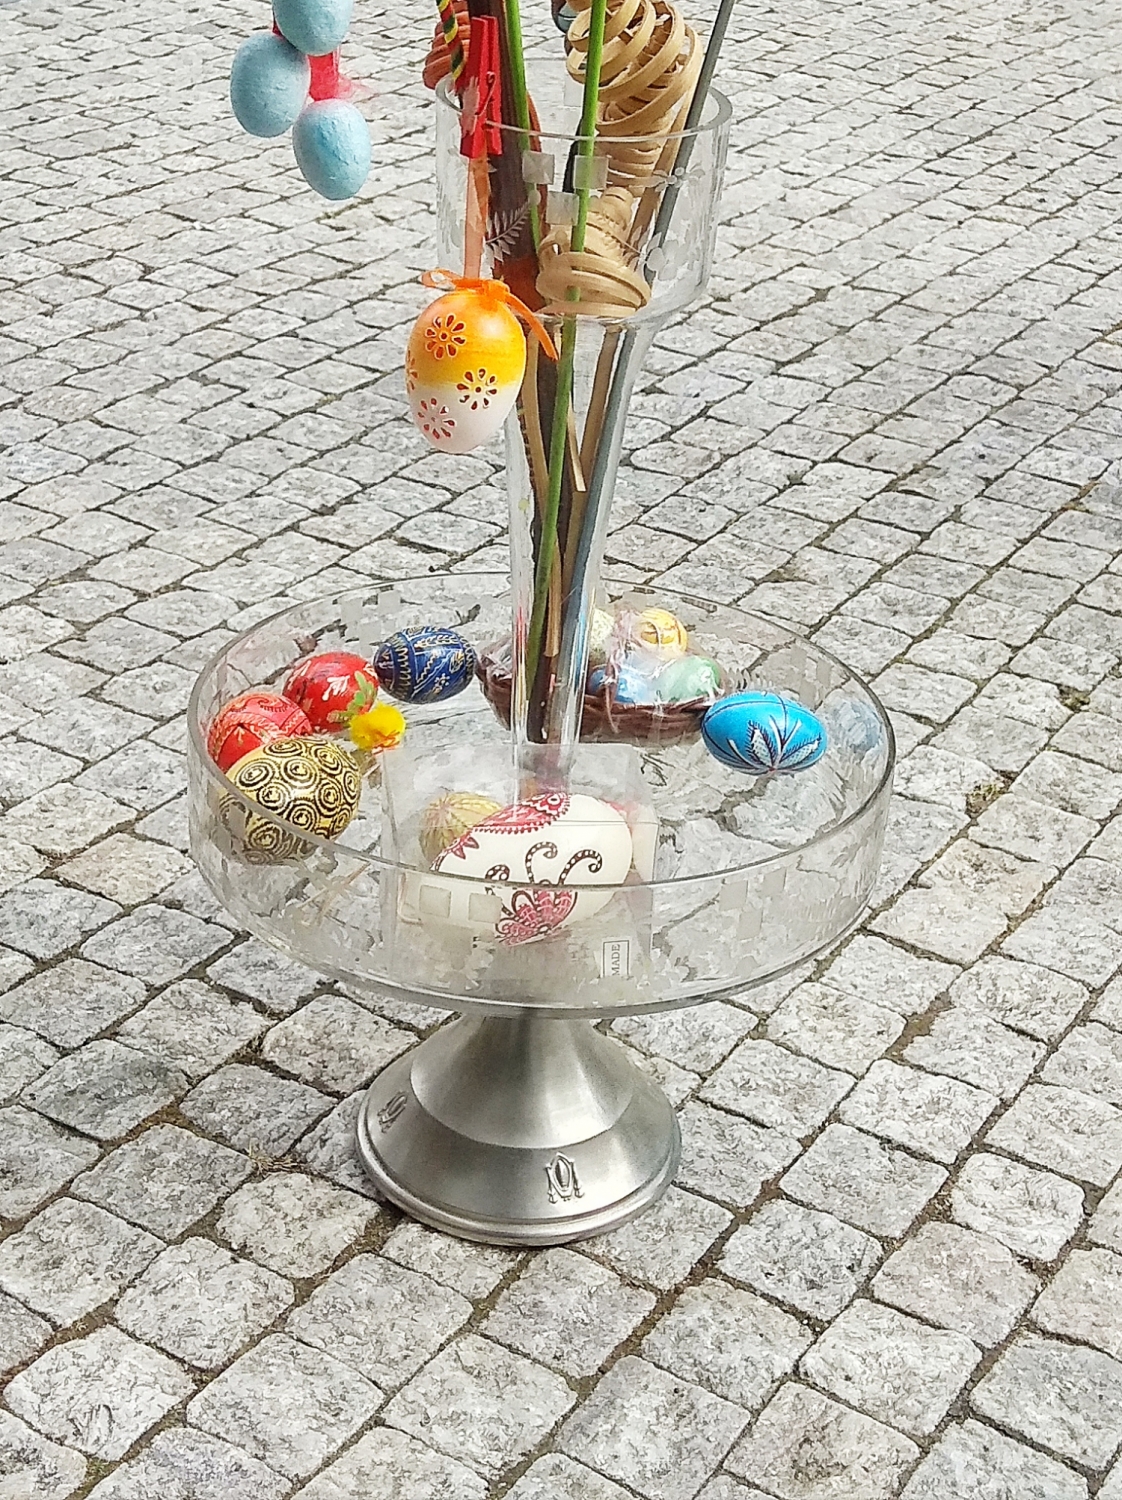 Skleněný secesní nástolec s vyjímatelnou skleněnou vázou na květiny